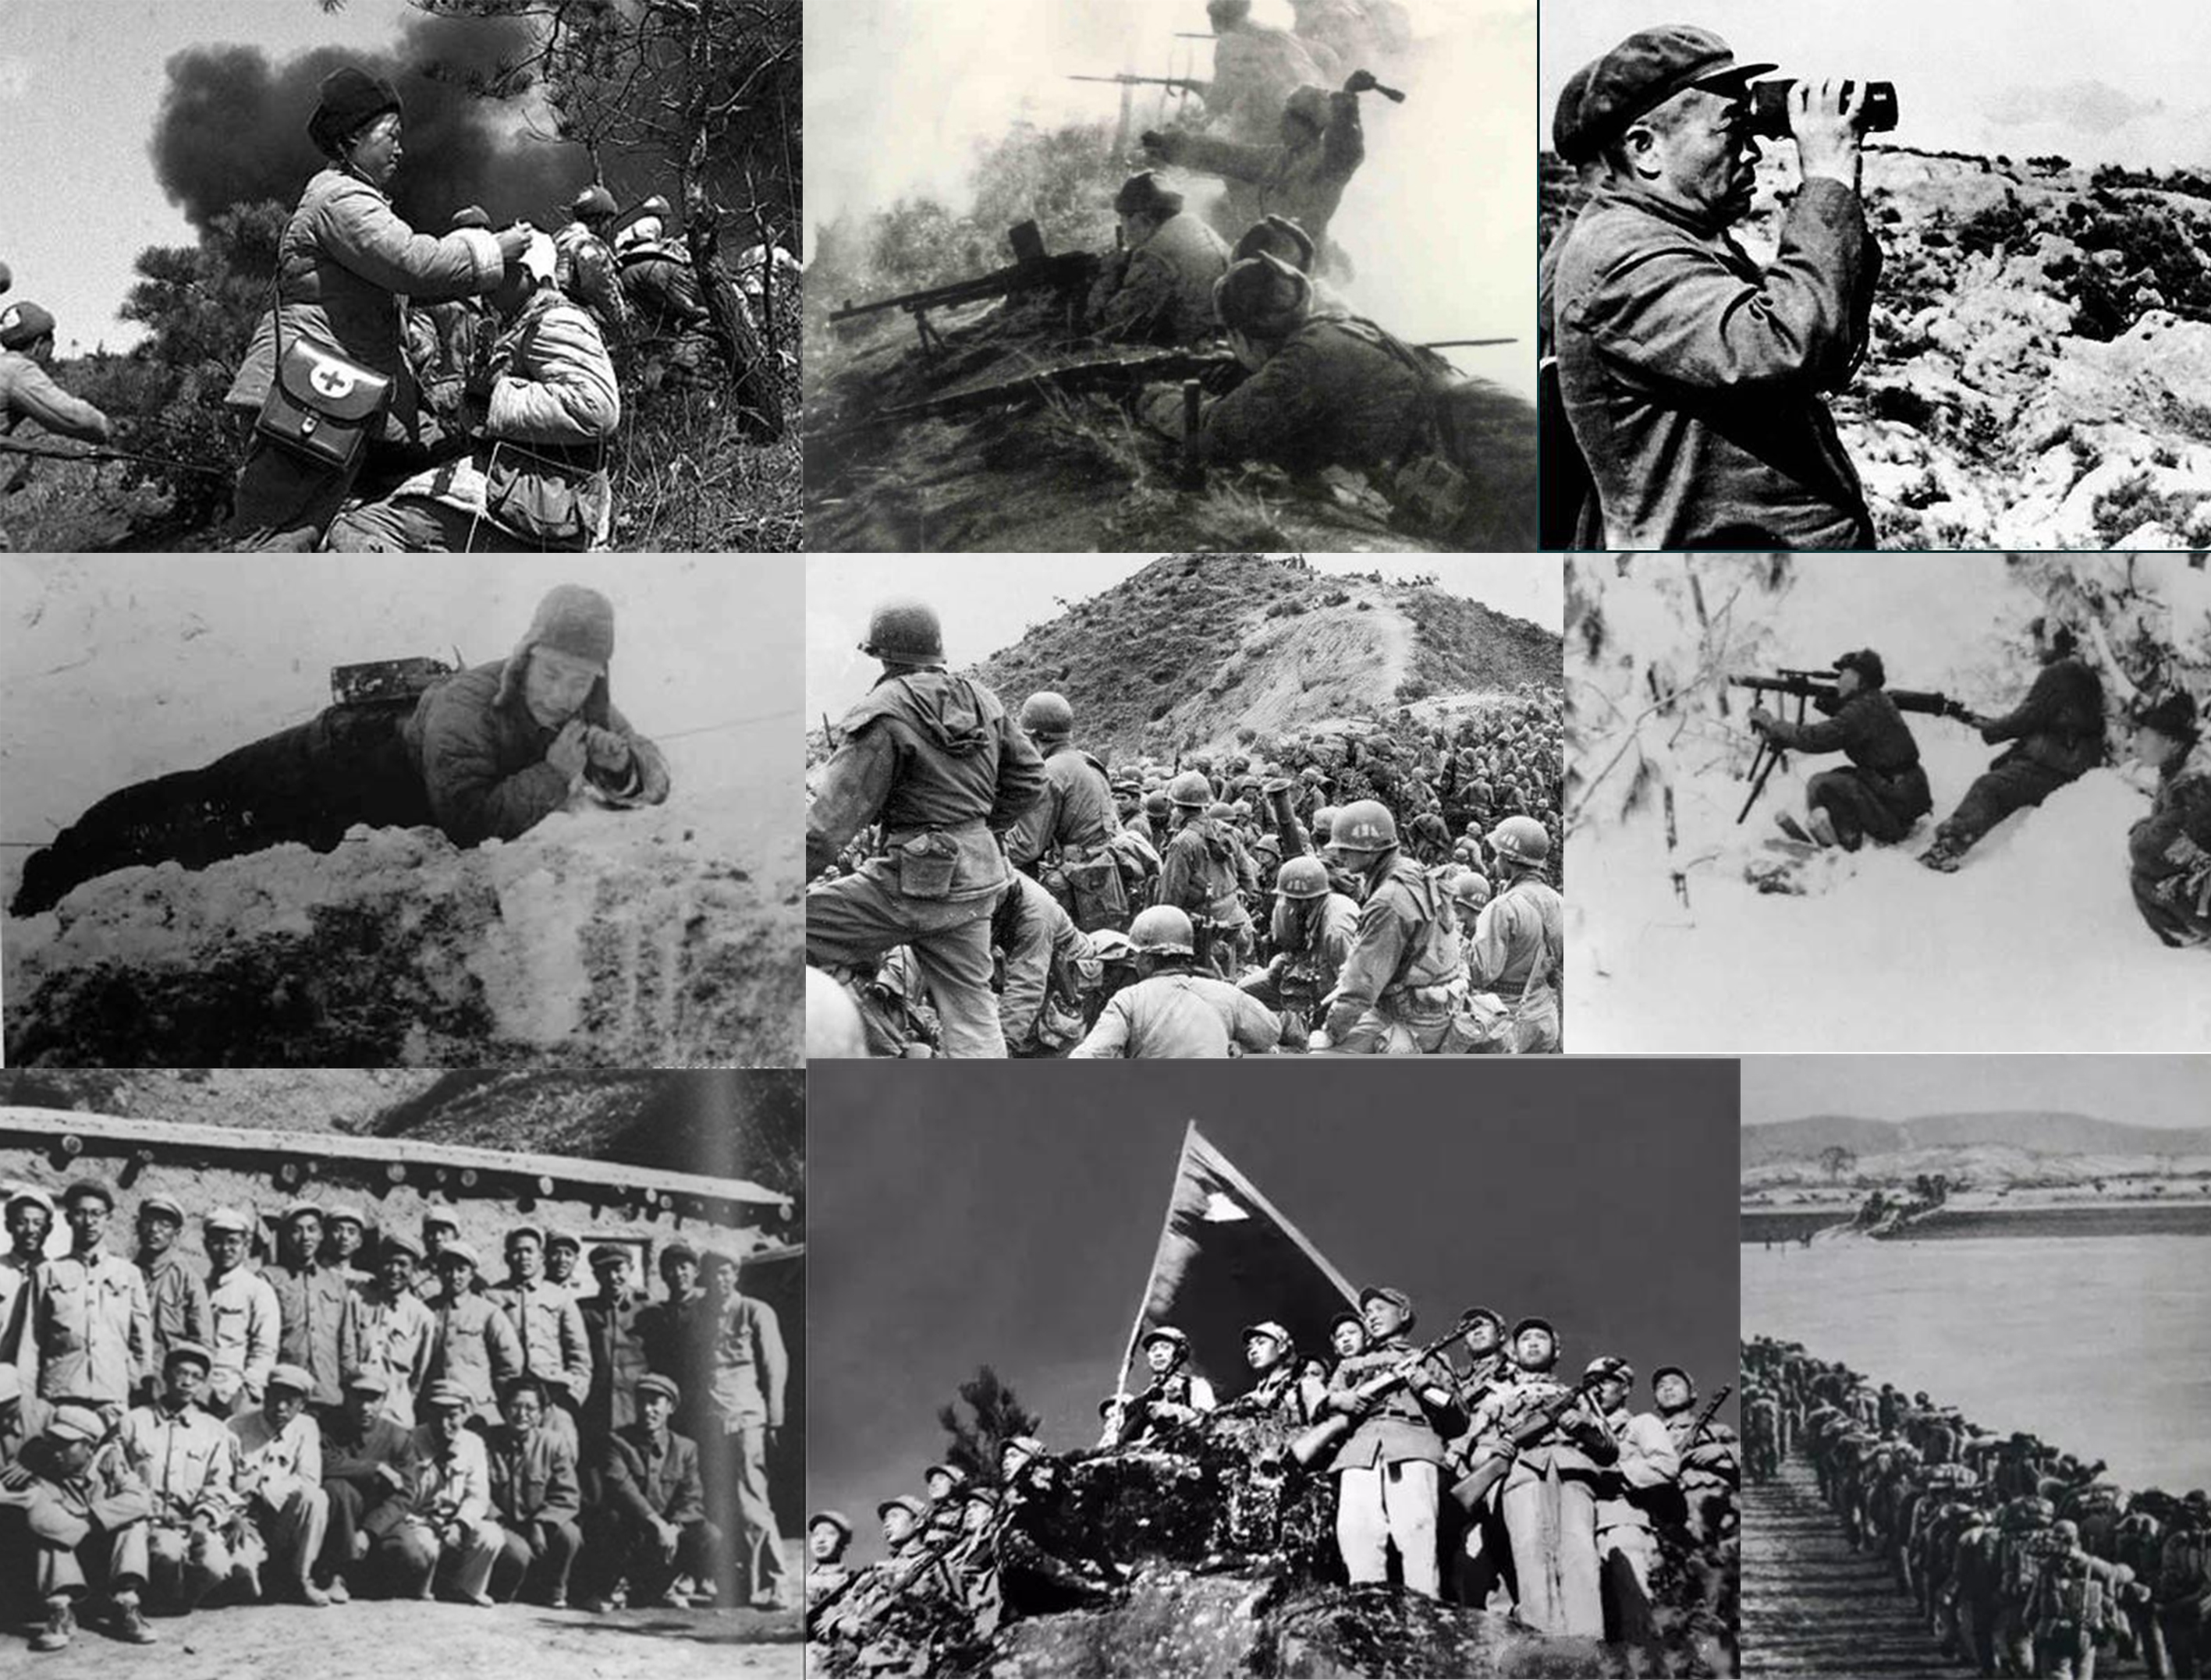 抗战胜利70周年图片_海报设计_编号4867286_红动中国